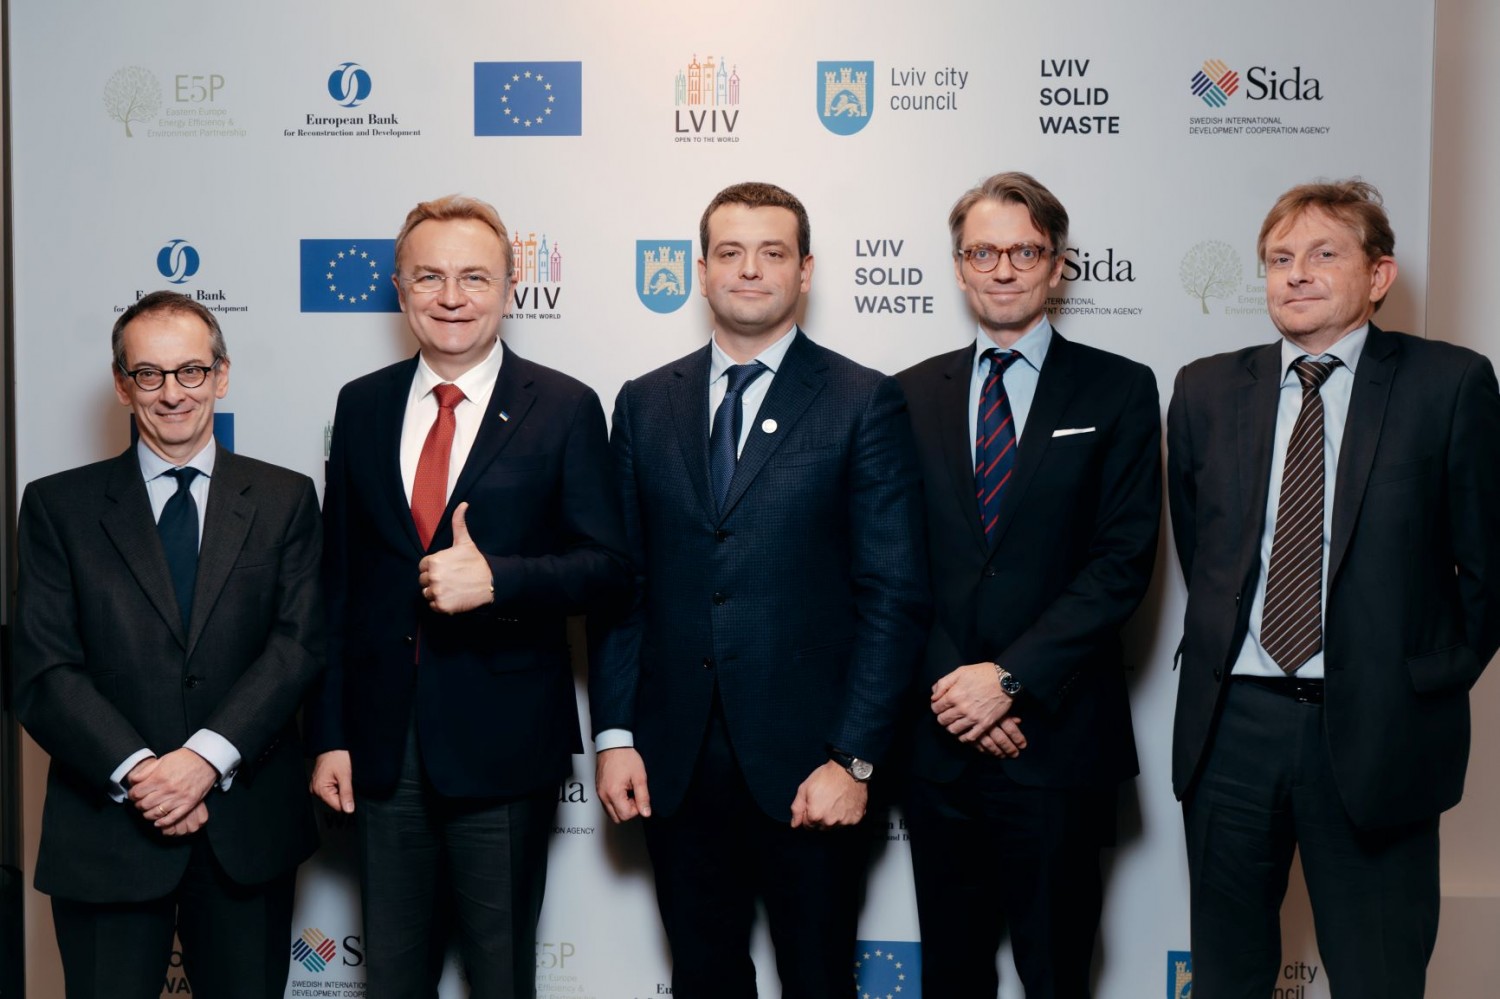 ЄБРР та Швеція розпочинають кампанію з інформування громадськості в рамках проекту поводження з твердими відходами у Львові